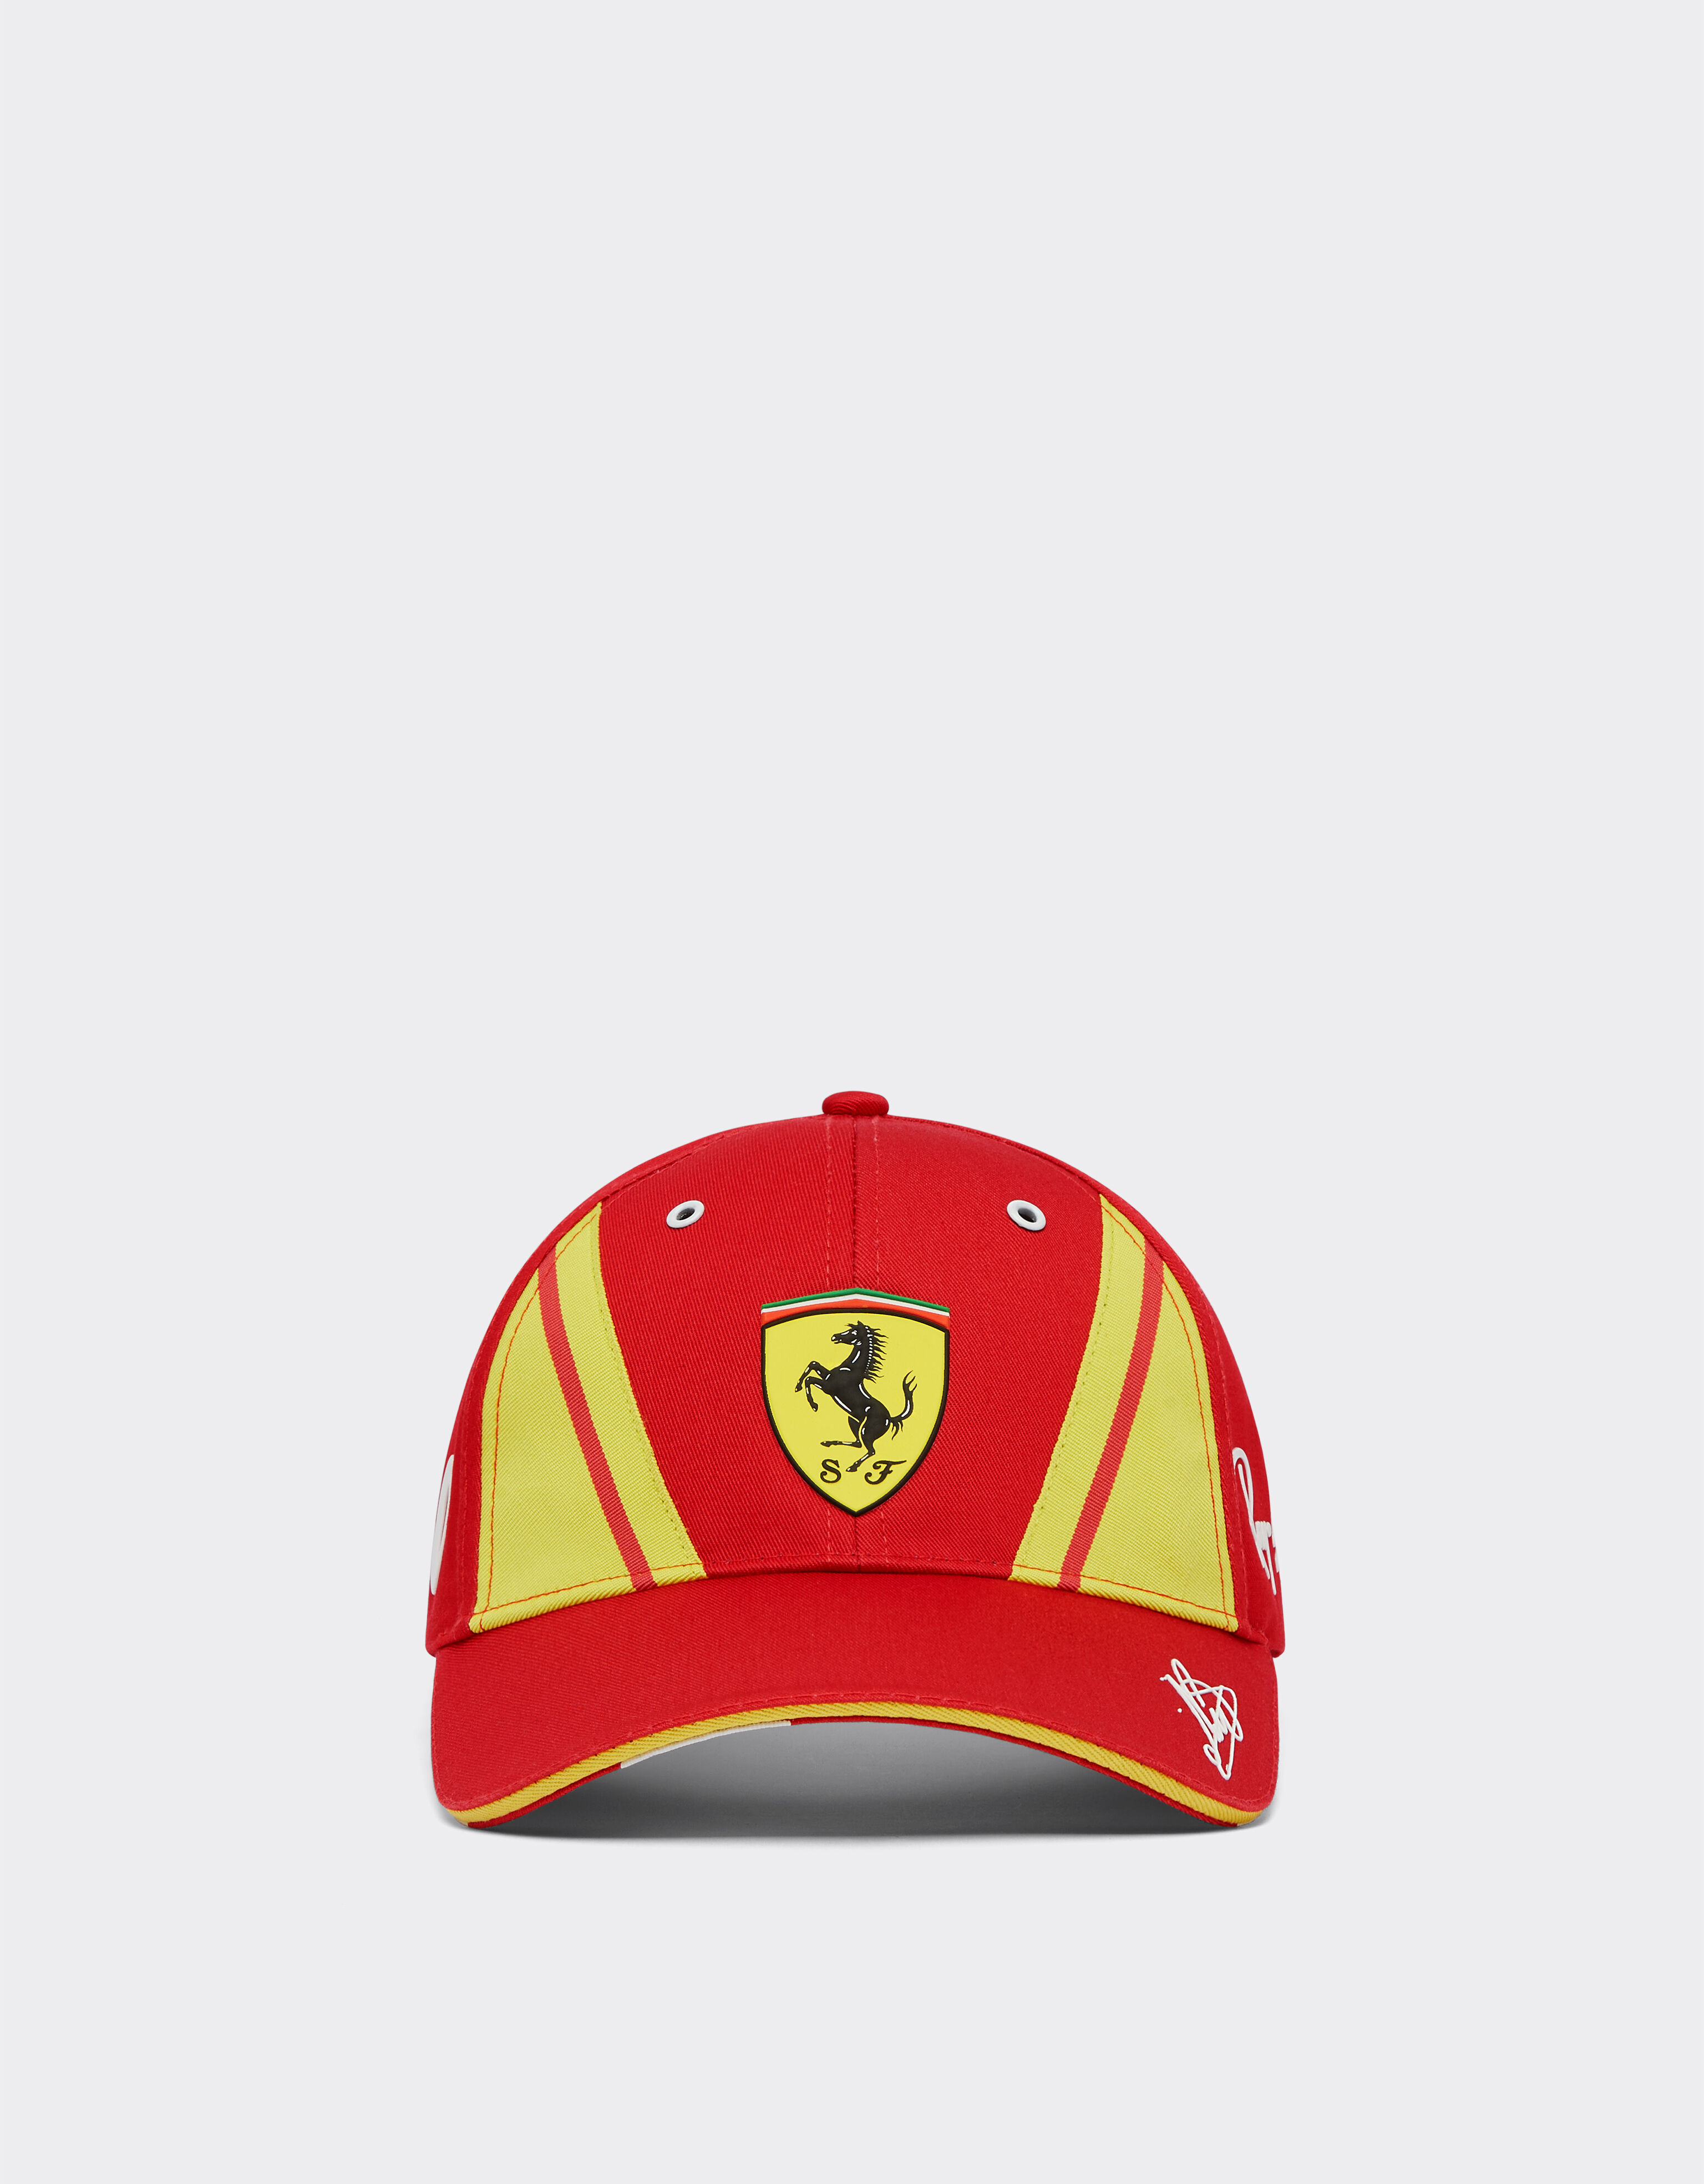 ${brand} Gorra Nielsen Ferrari Hypercar - Edición limitada ${colorDescription} ${masterID}